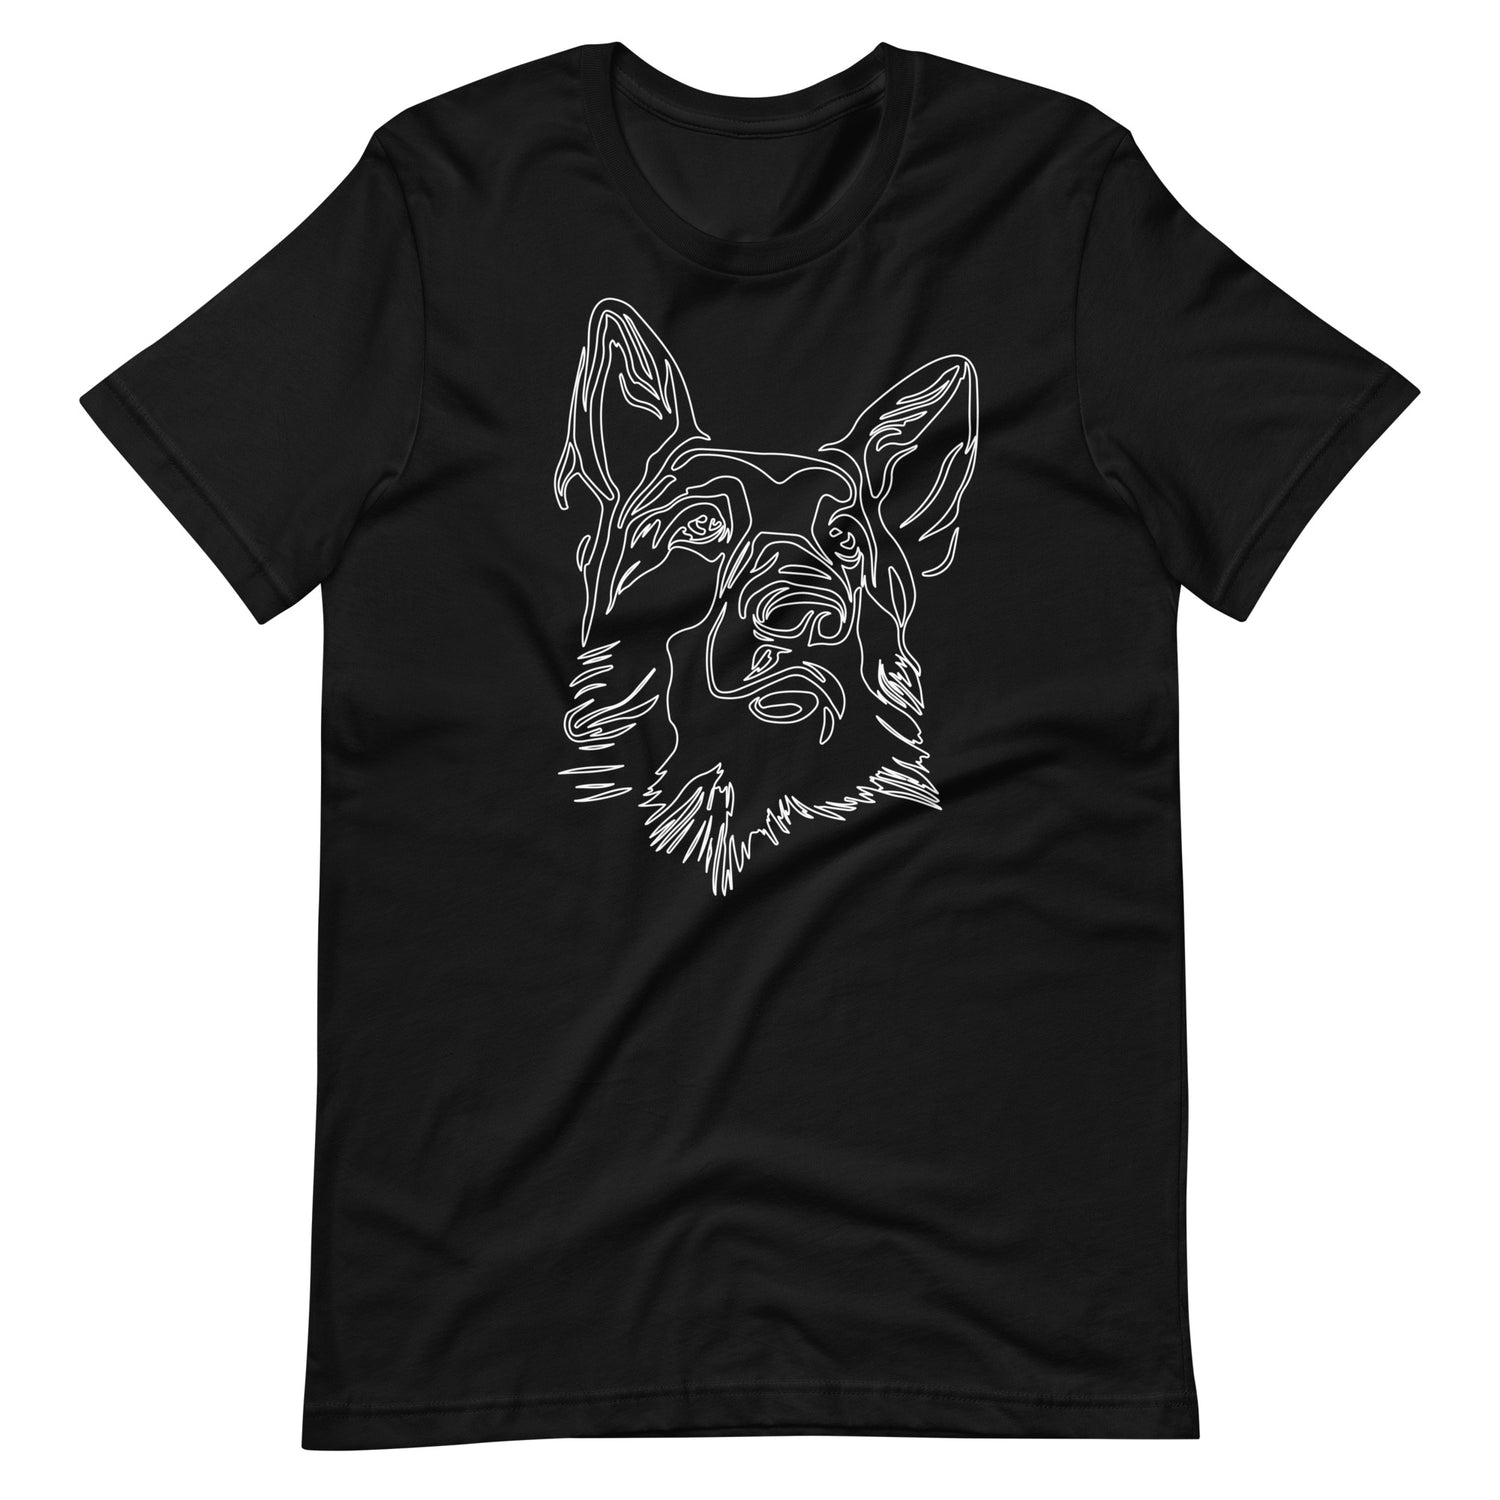 White line German Shepherd face on unisex black t-shirt